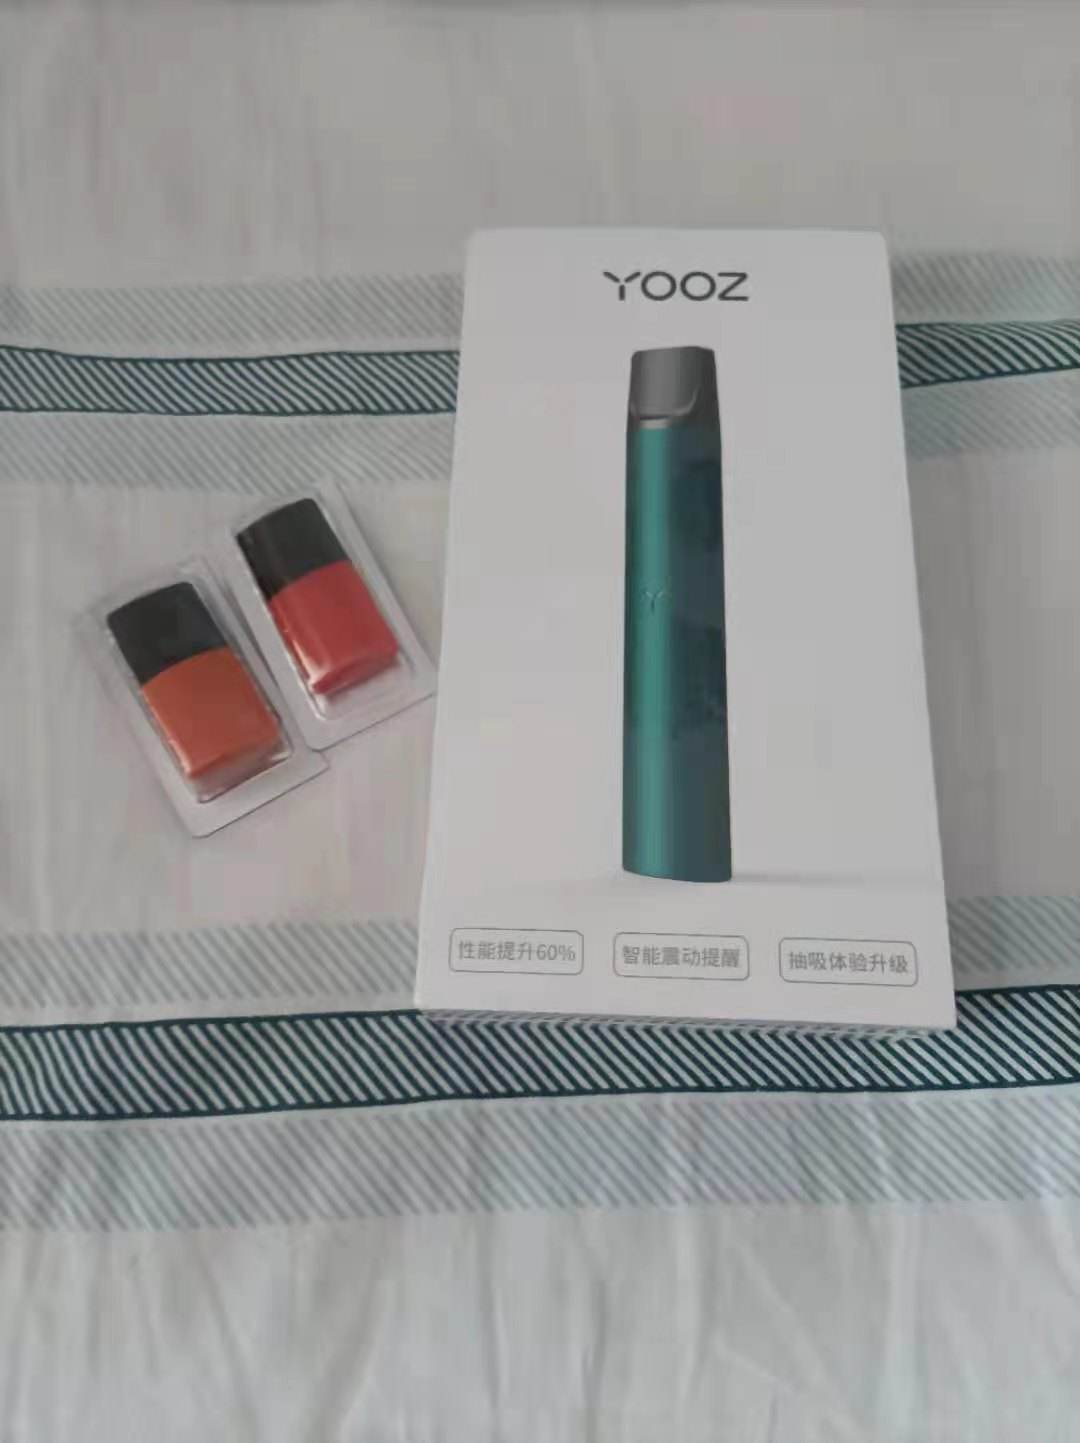 yooz二代产品介绍的简单介绍